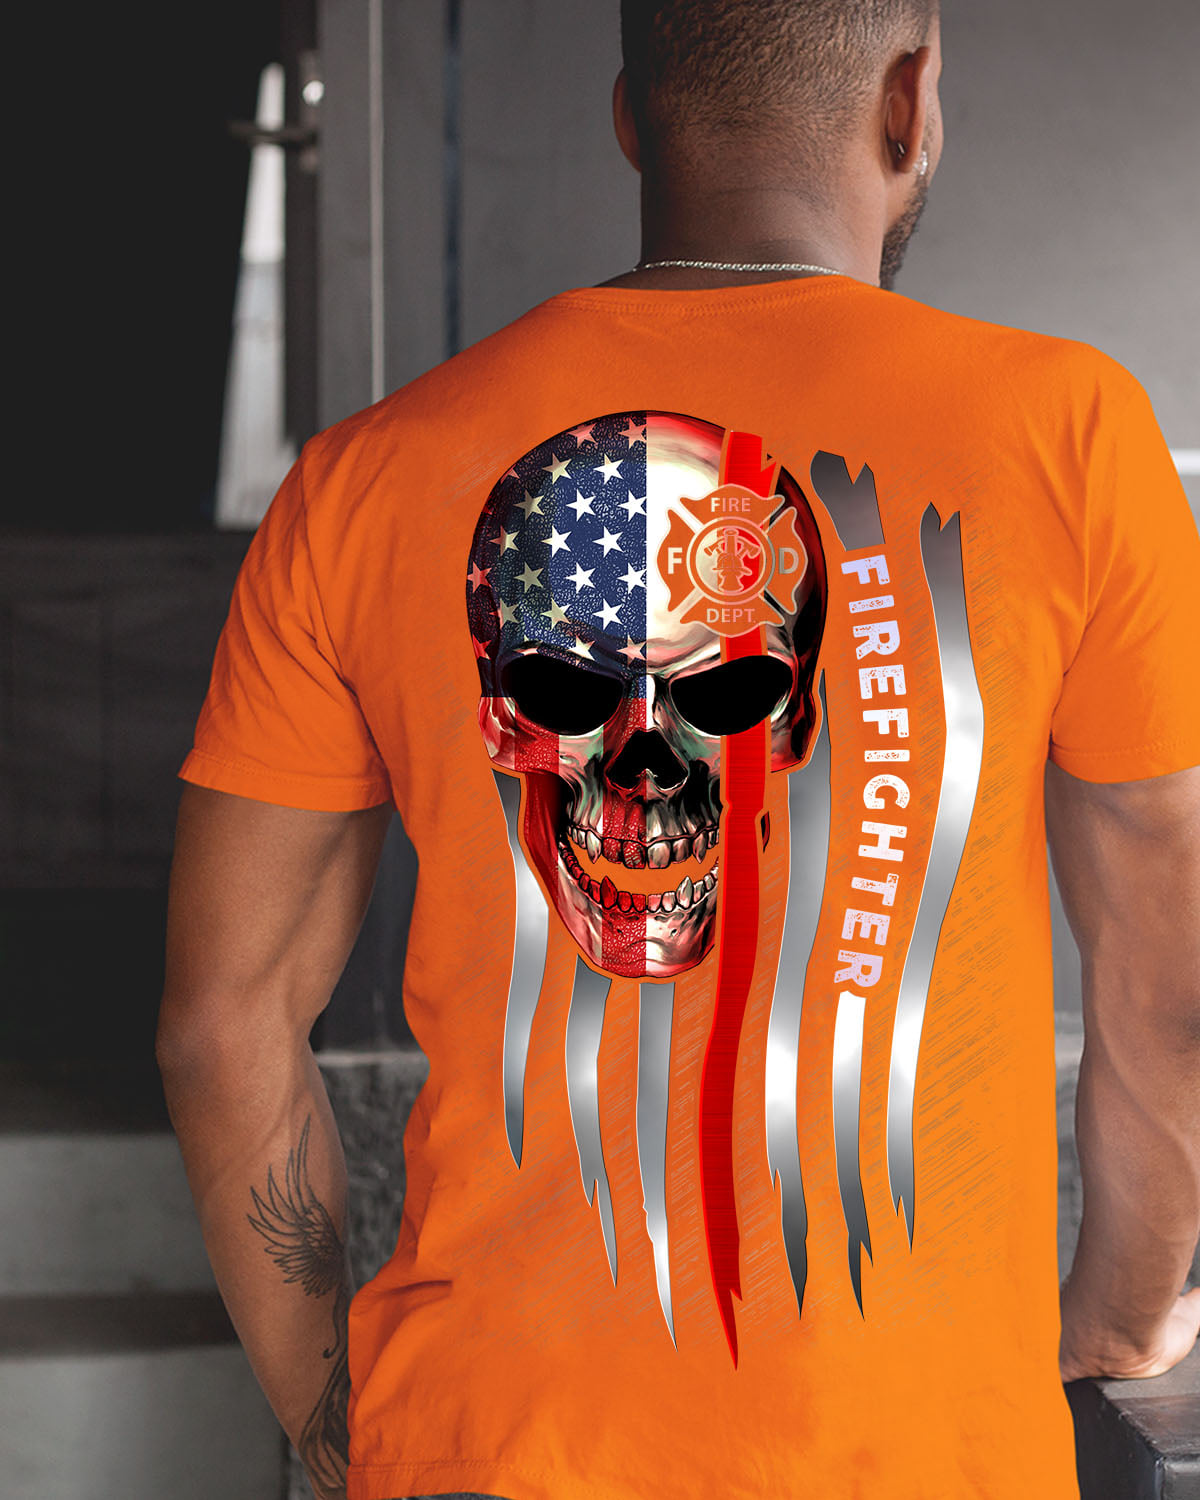 Firefighter the job - America flag, evil skullcap